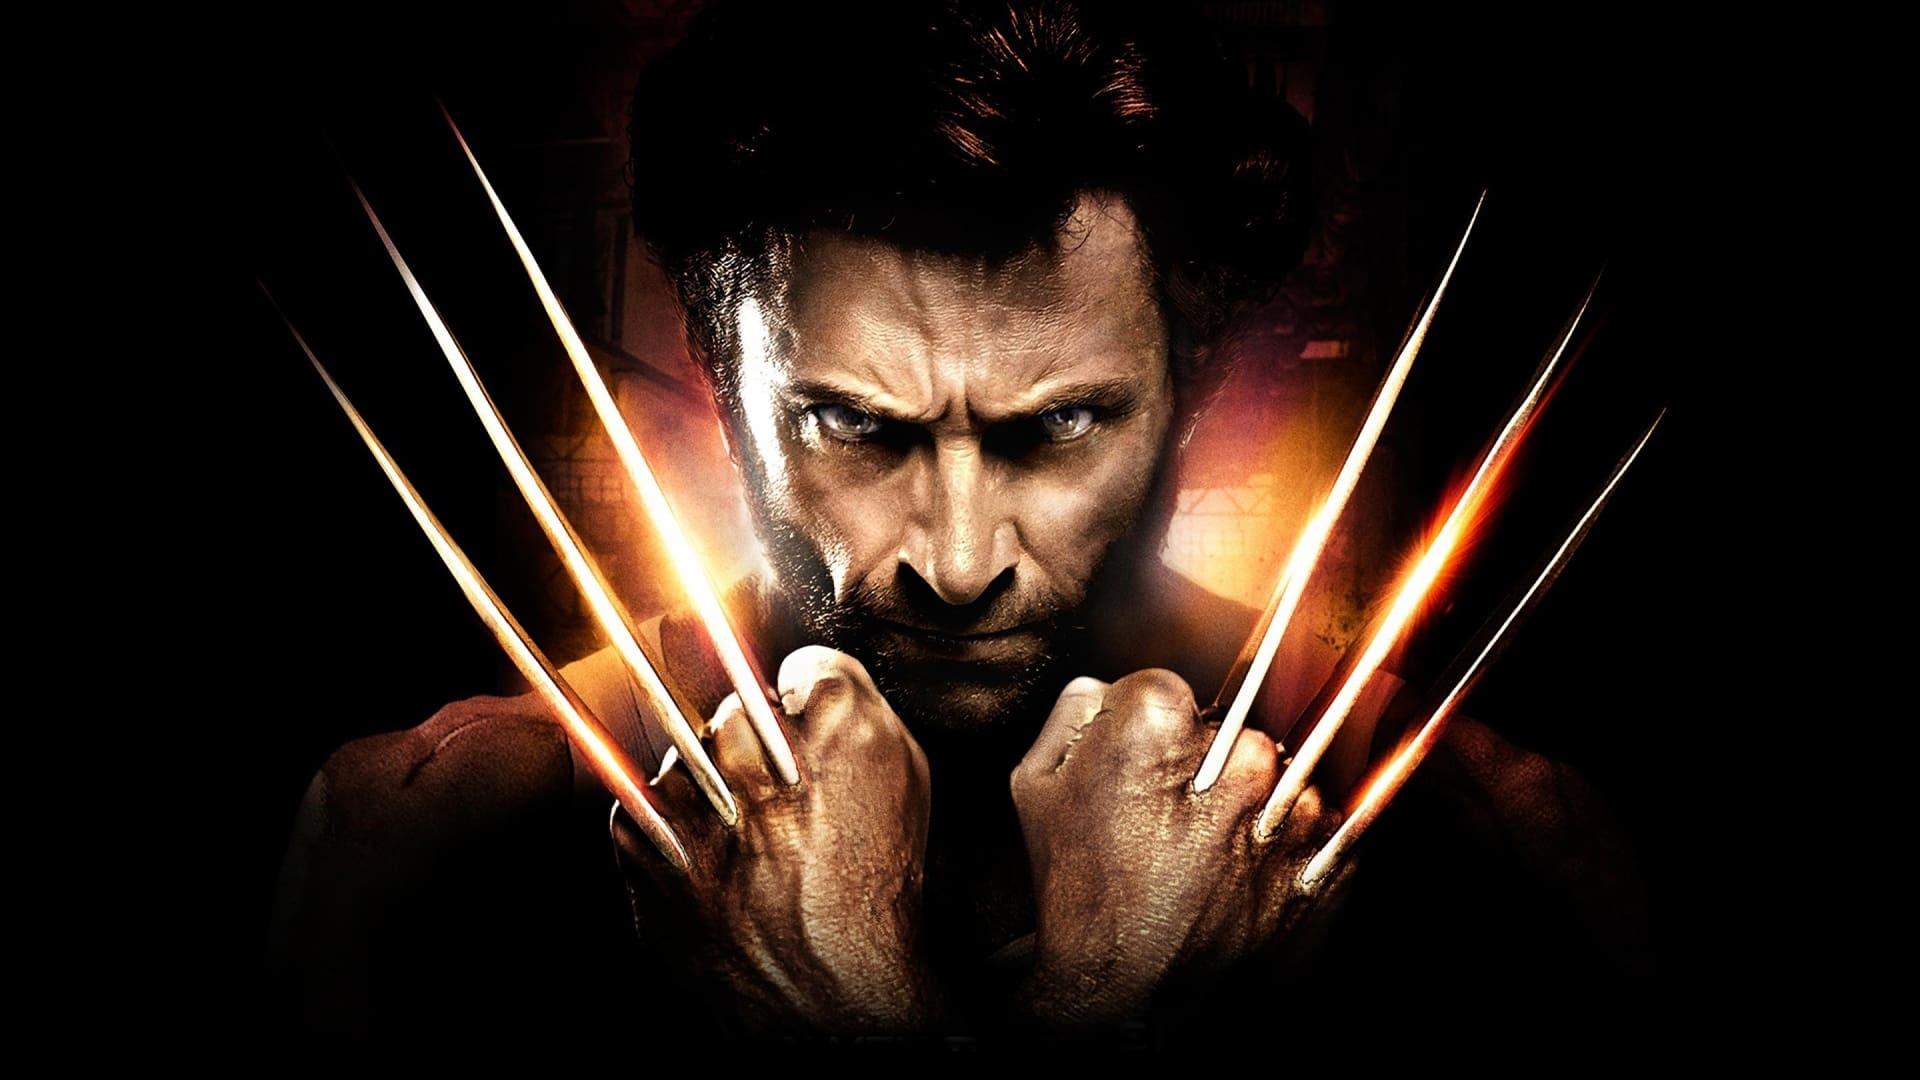 X-Men Origins: Wolverine backdrop